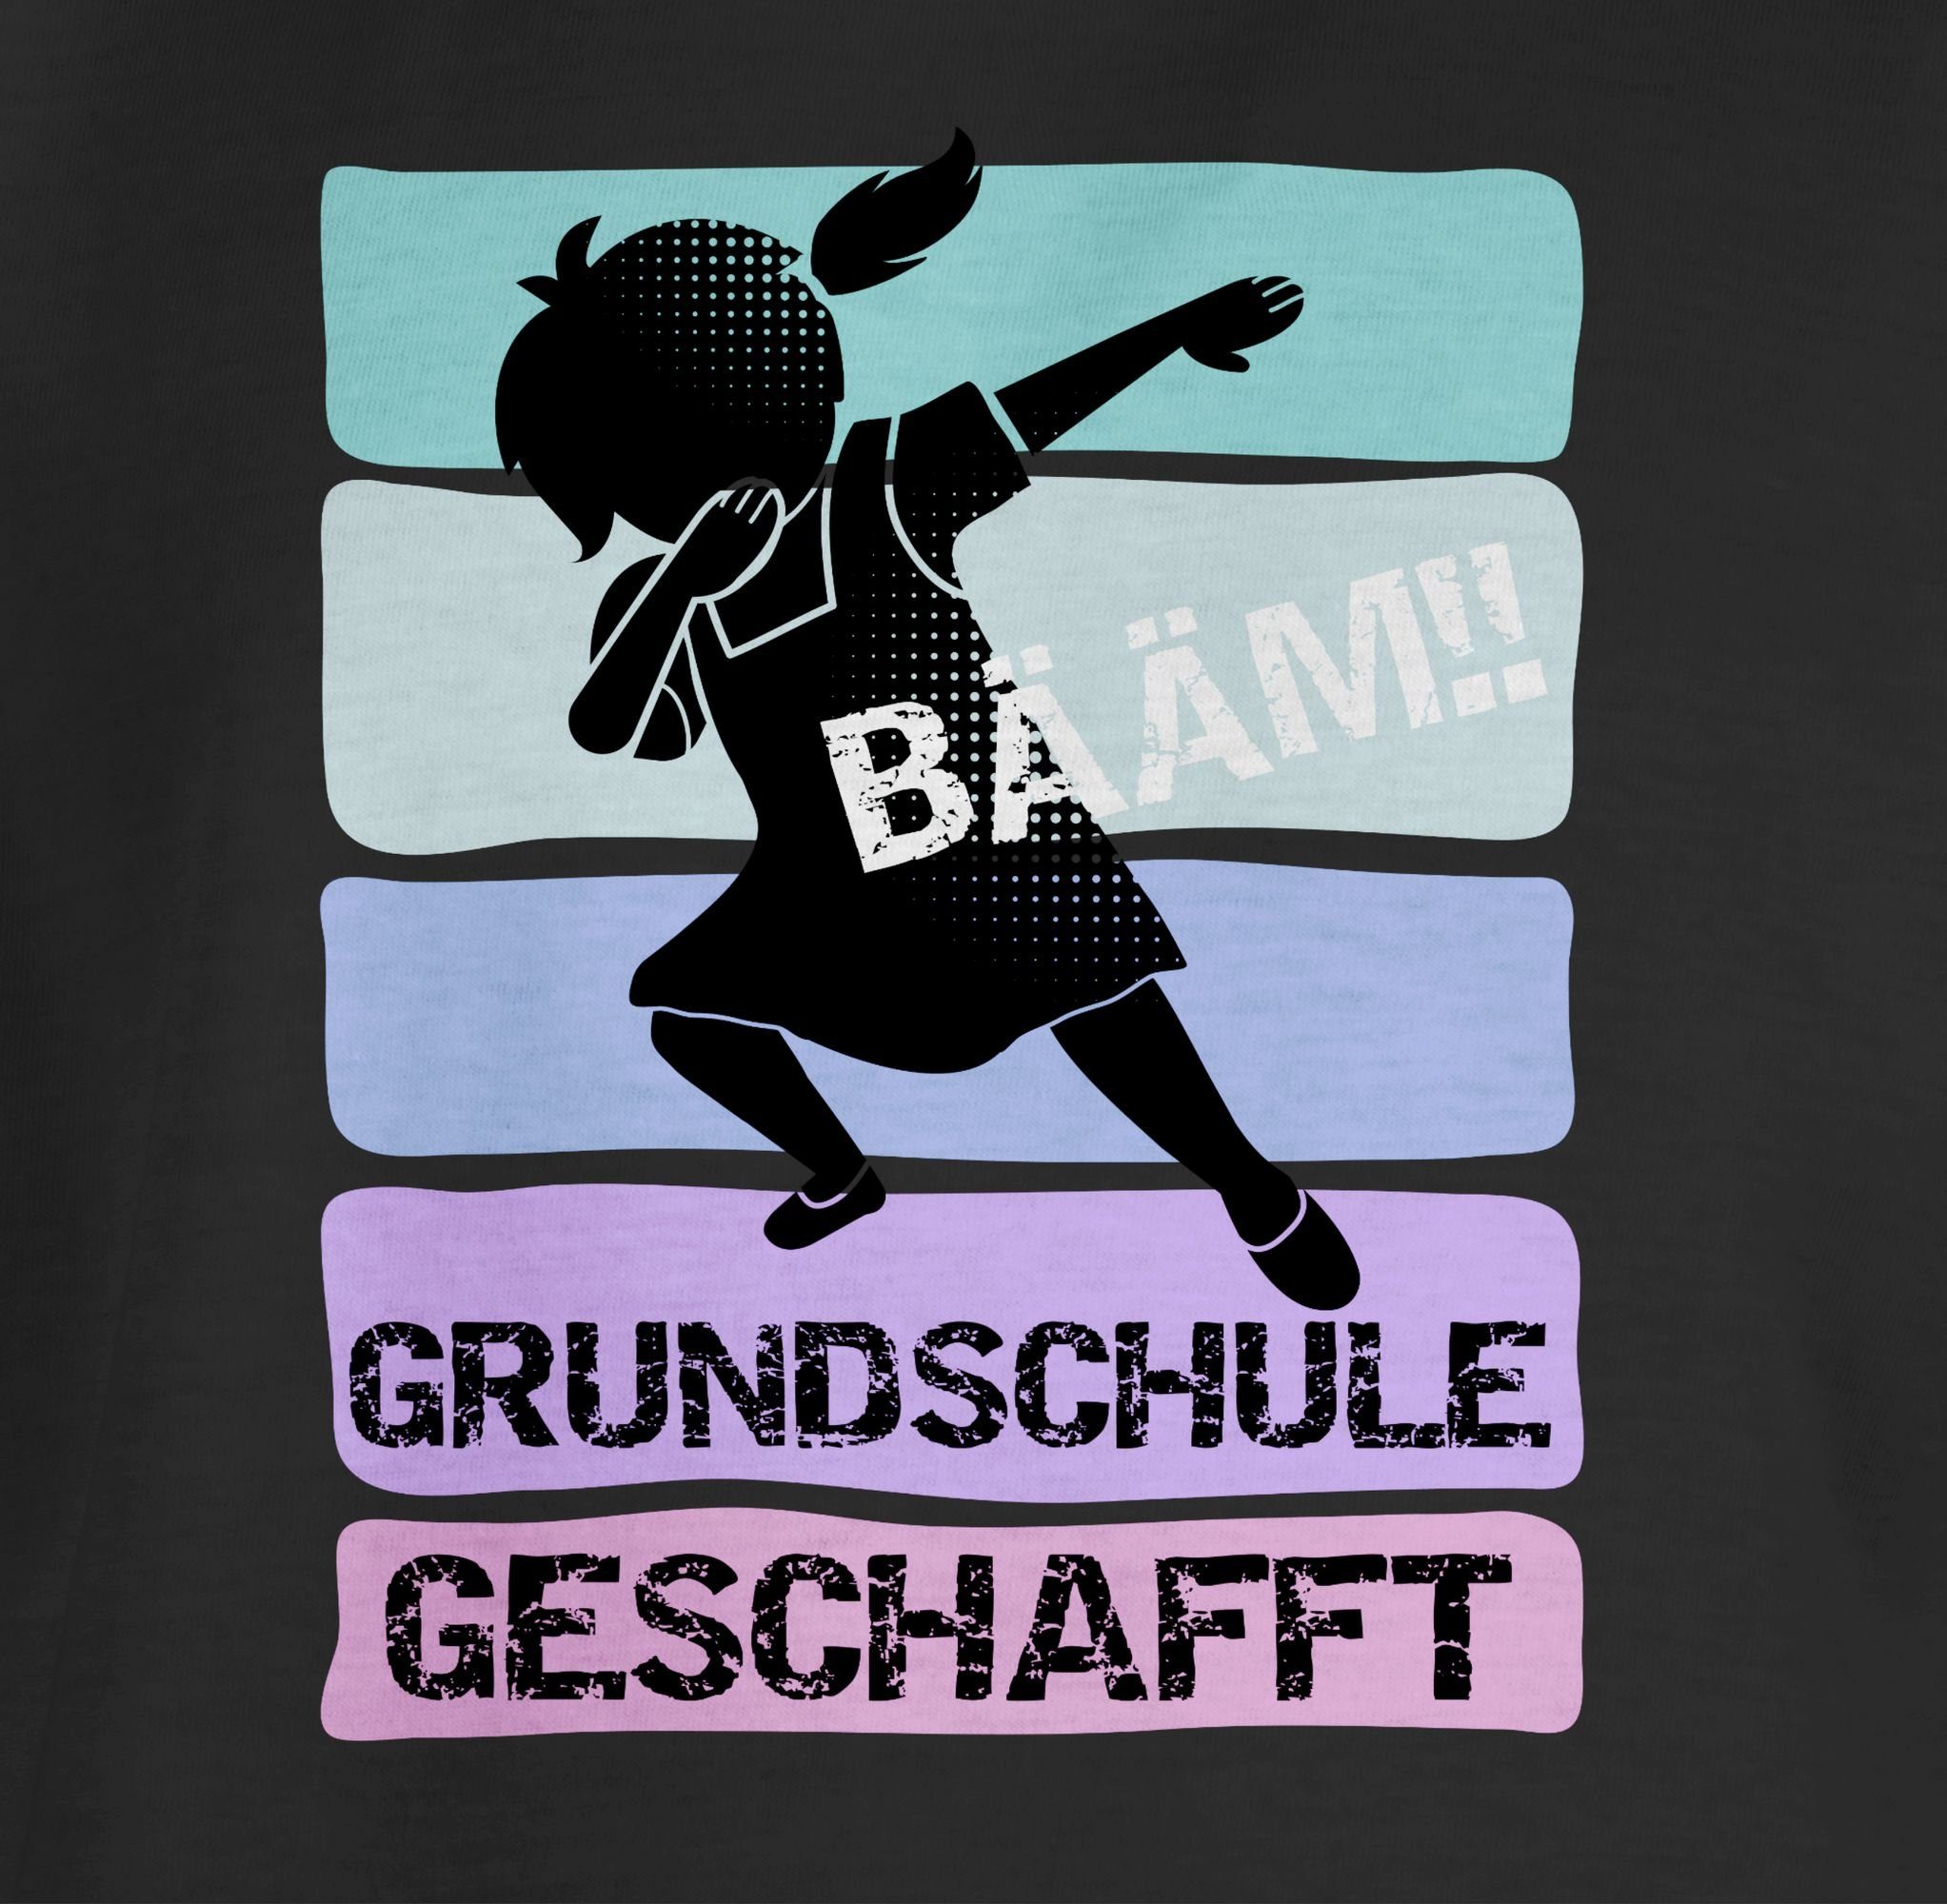 Shirtracer T-Shirt Schwarz Einschulung 02 geschafft Bääm!! Grundschule Mädchen Mädchen